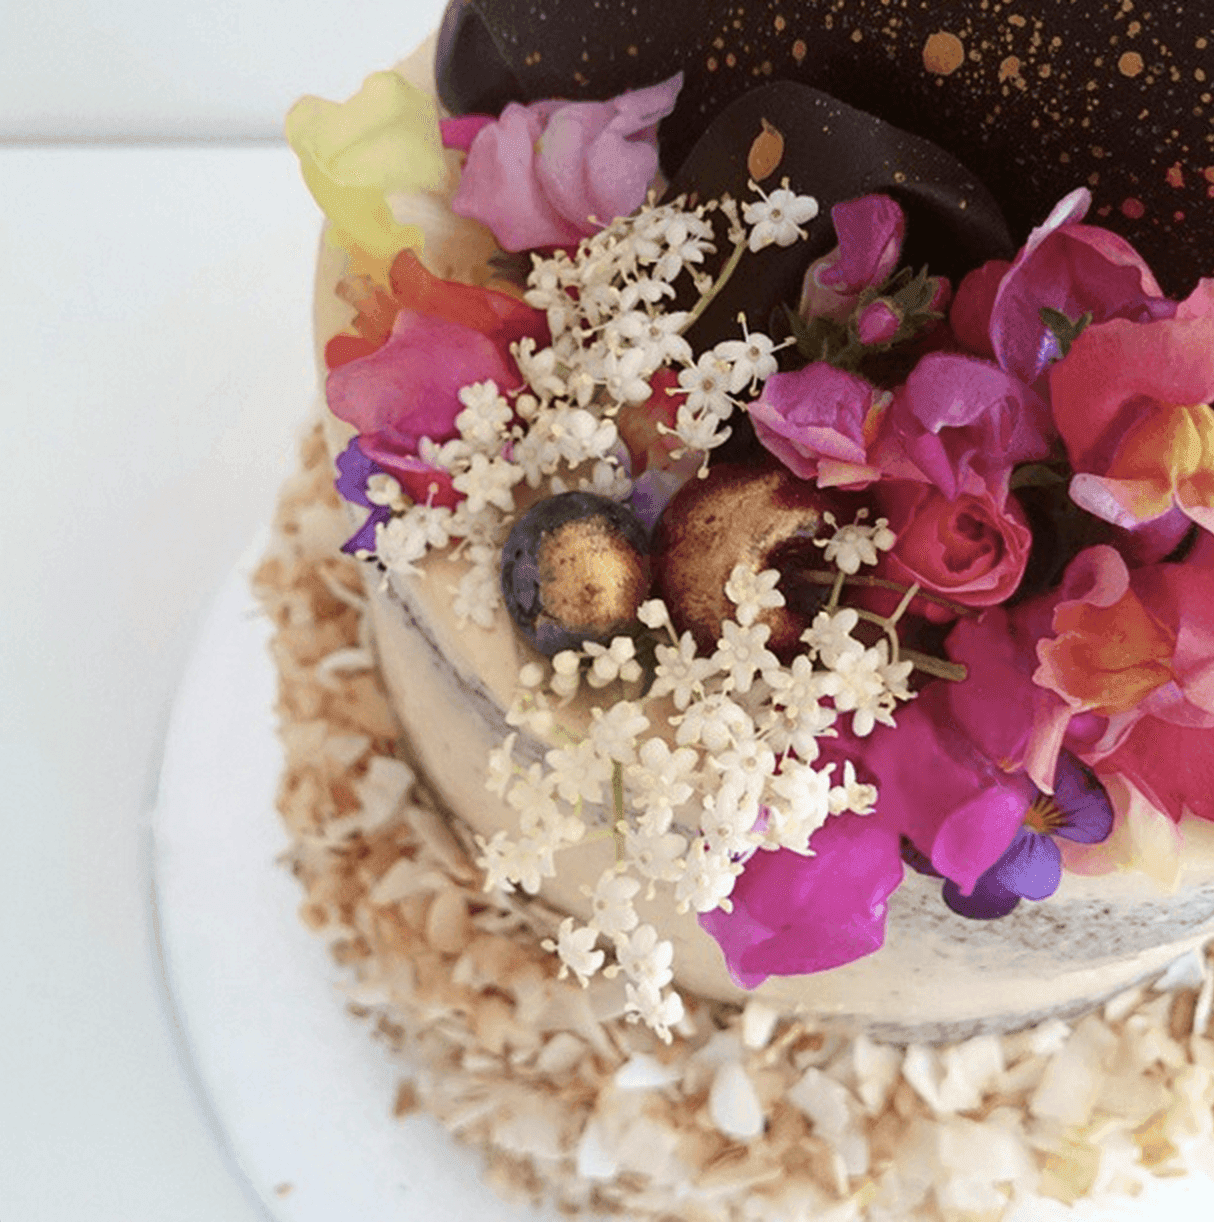 Un-Birthday Cake wedding